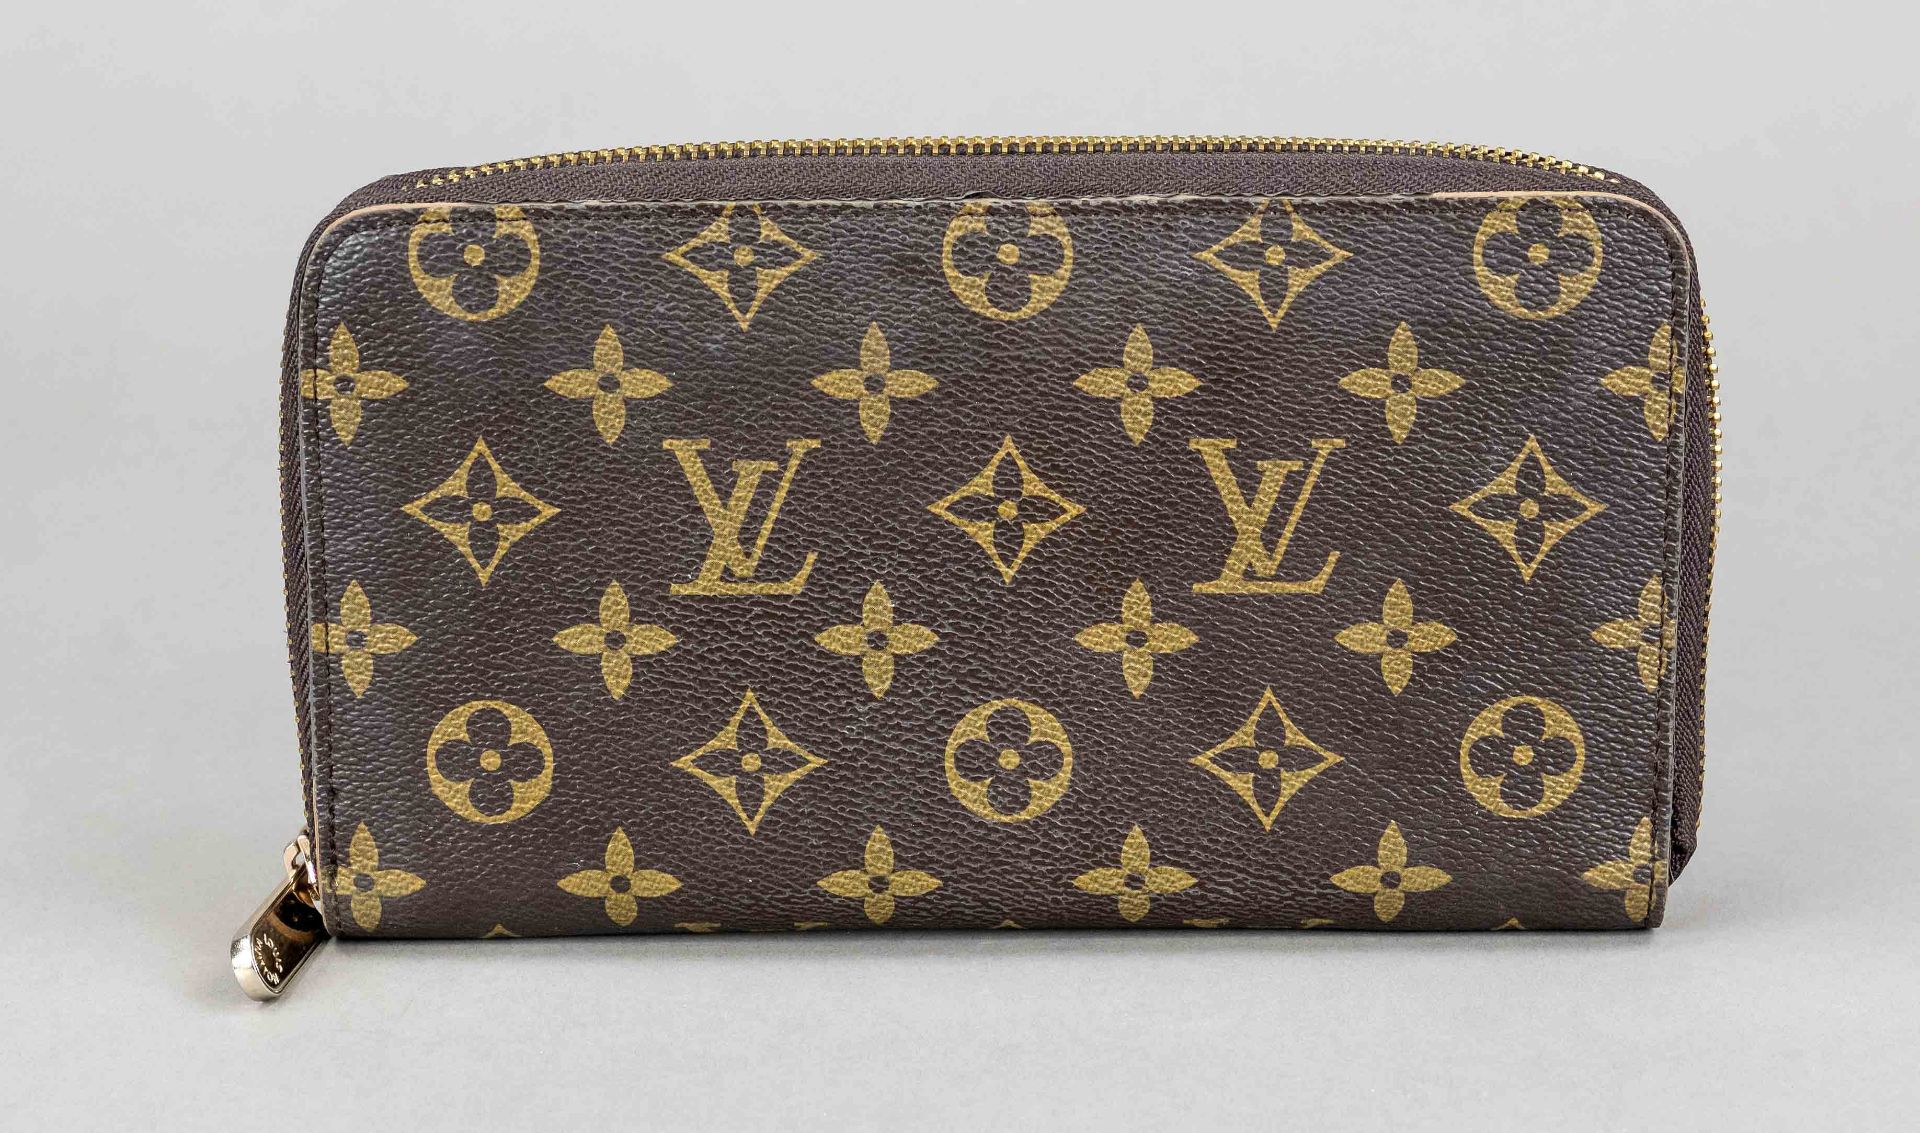 Louis Vuitton, Vintage Monogram Canvas Organizer/Wallet, rubberized cotton canvas in classic logo